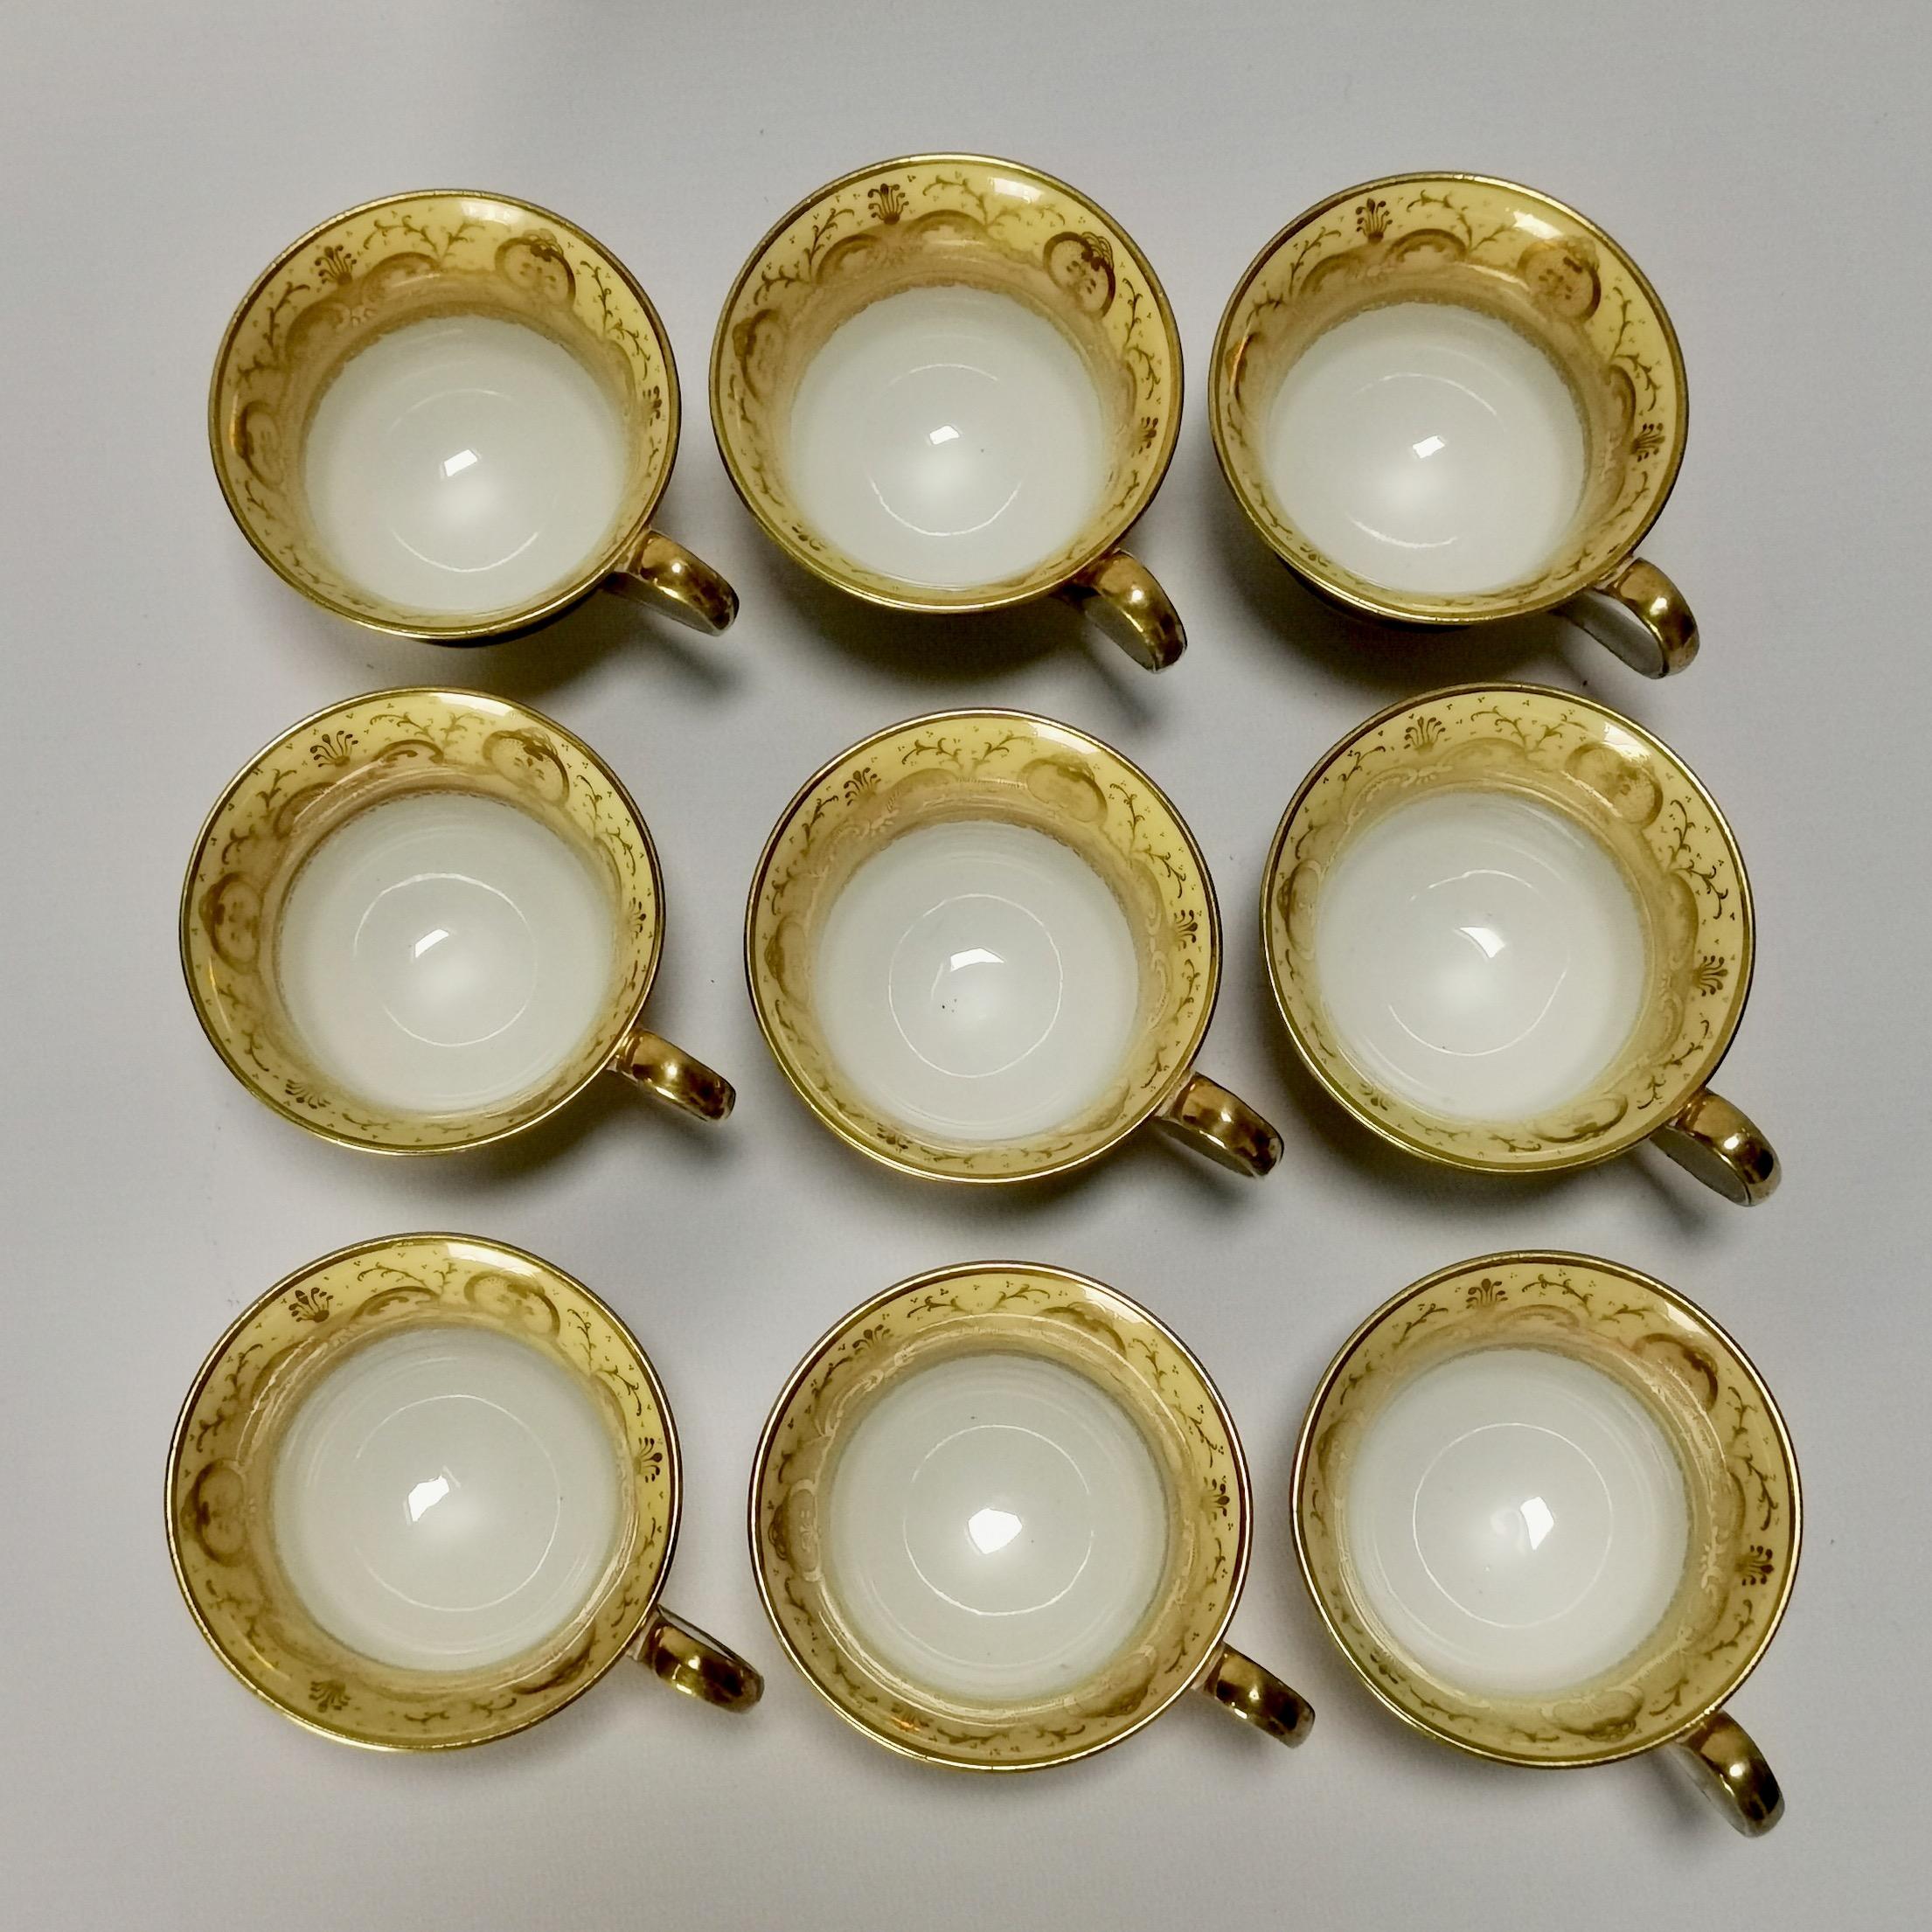 Minton Porcelain Tea Service, Yellow with Landscapes, Provenance Regency 9